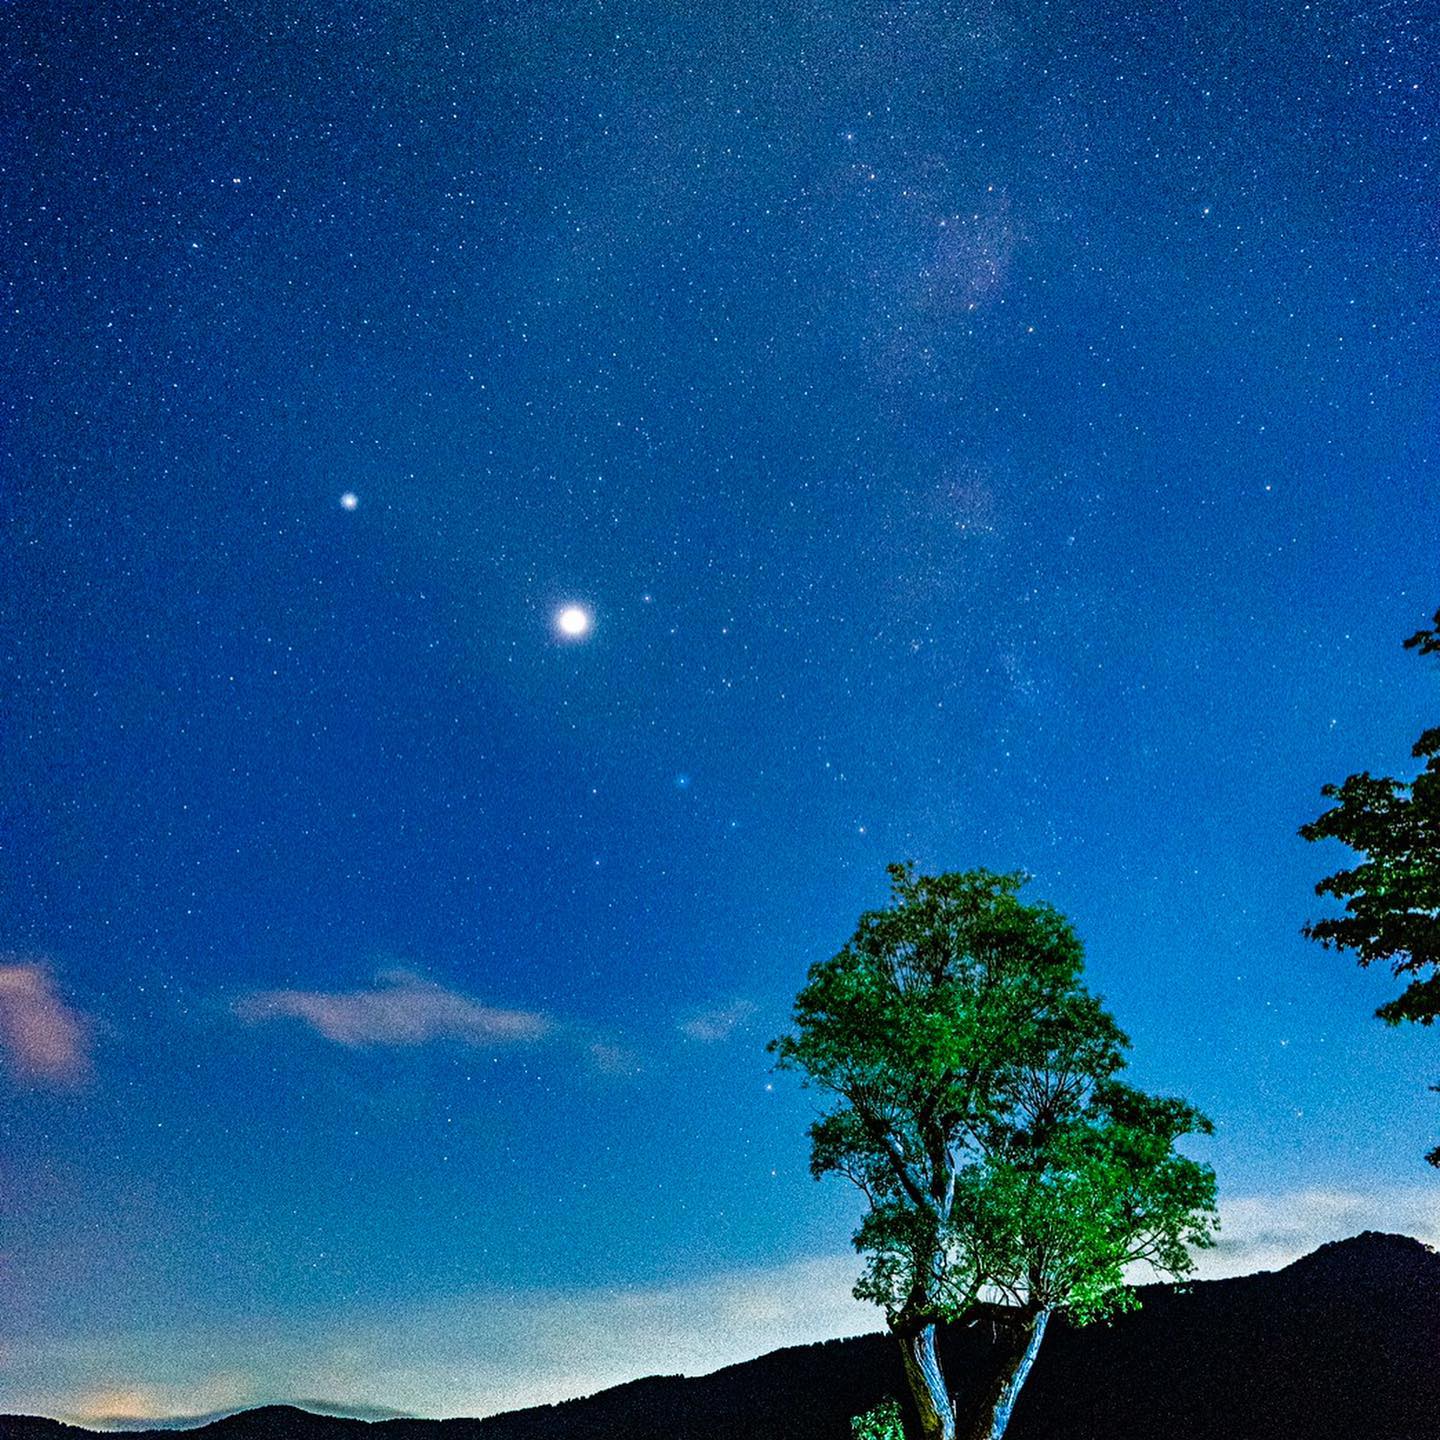 秋の夜空の星がくっきり見えてきました|箱根町観光協会公式サイト 温泉・旅館・ホテル・観光情報満載!